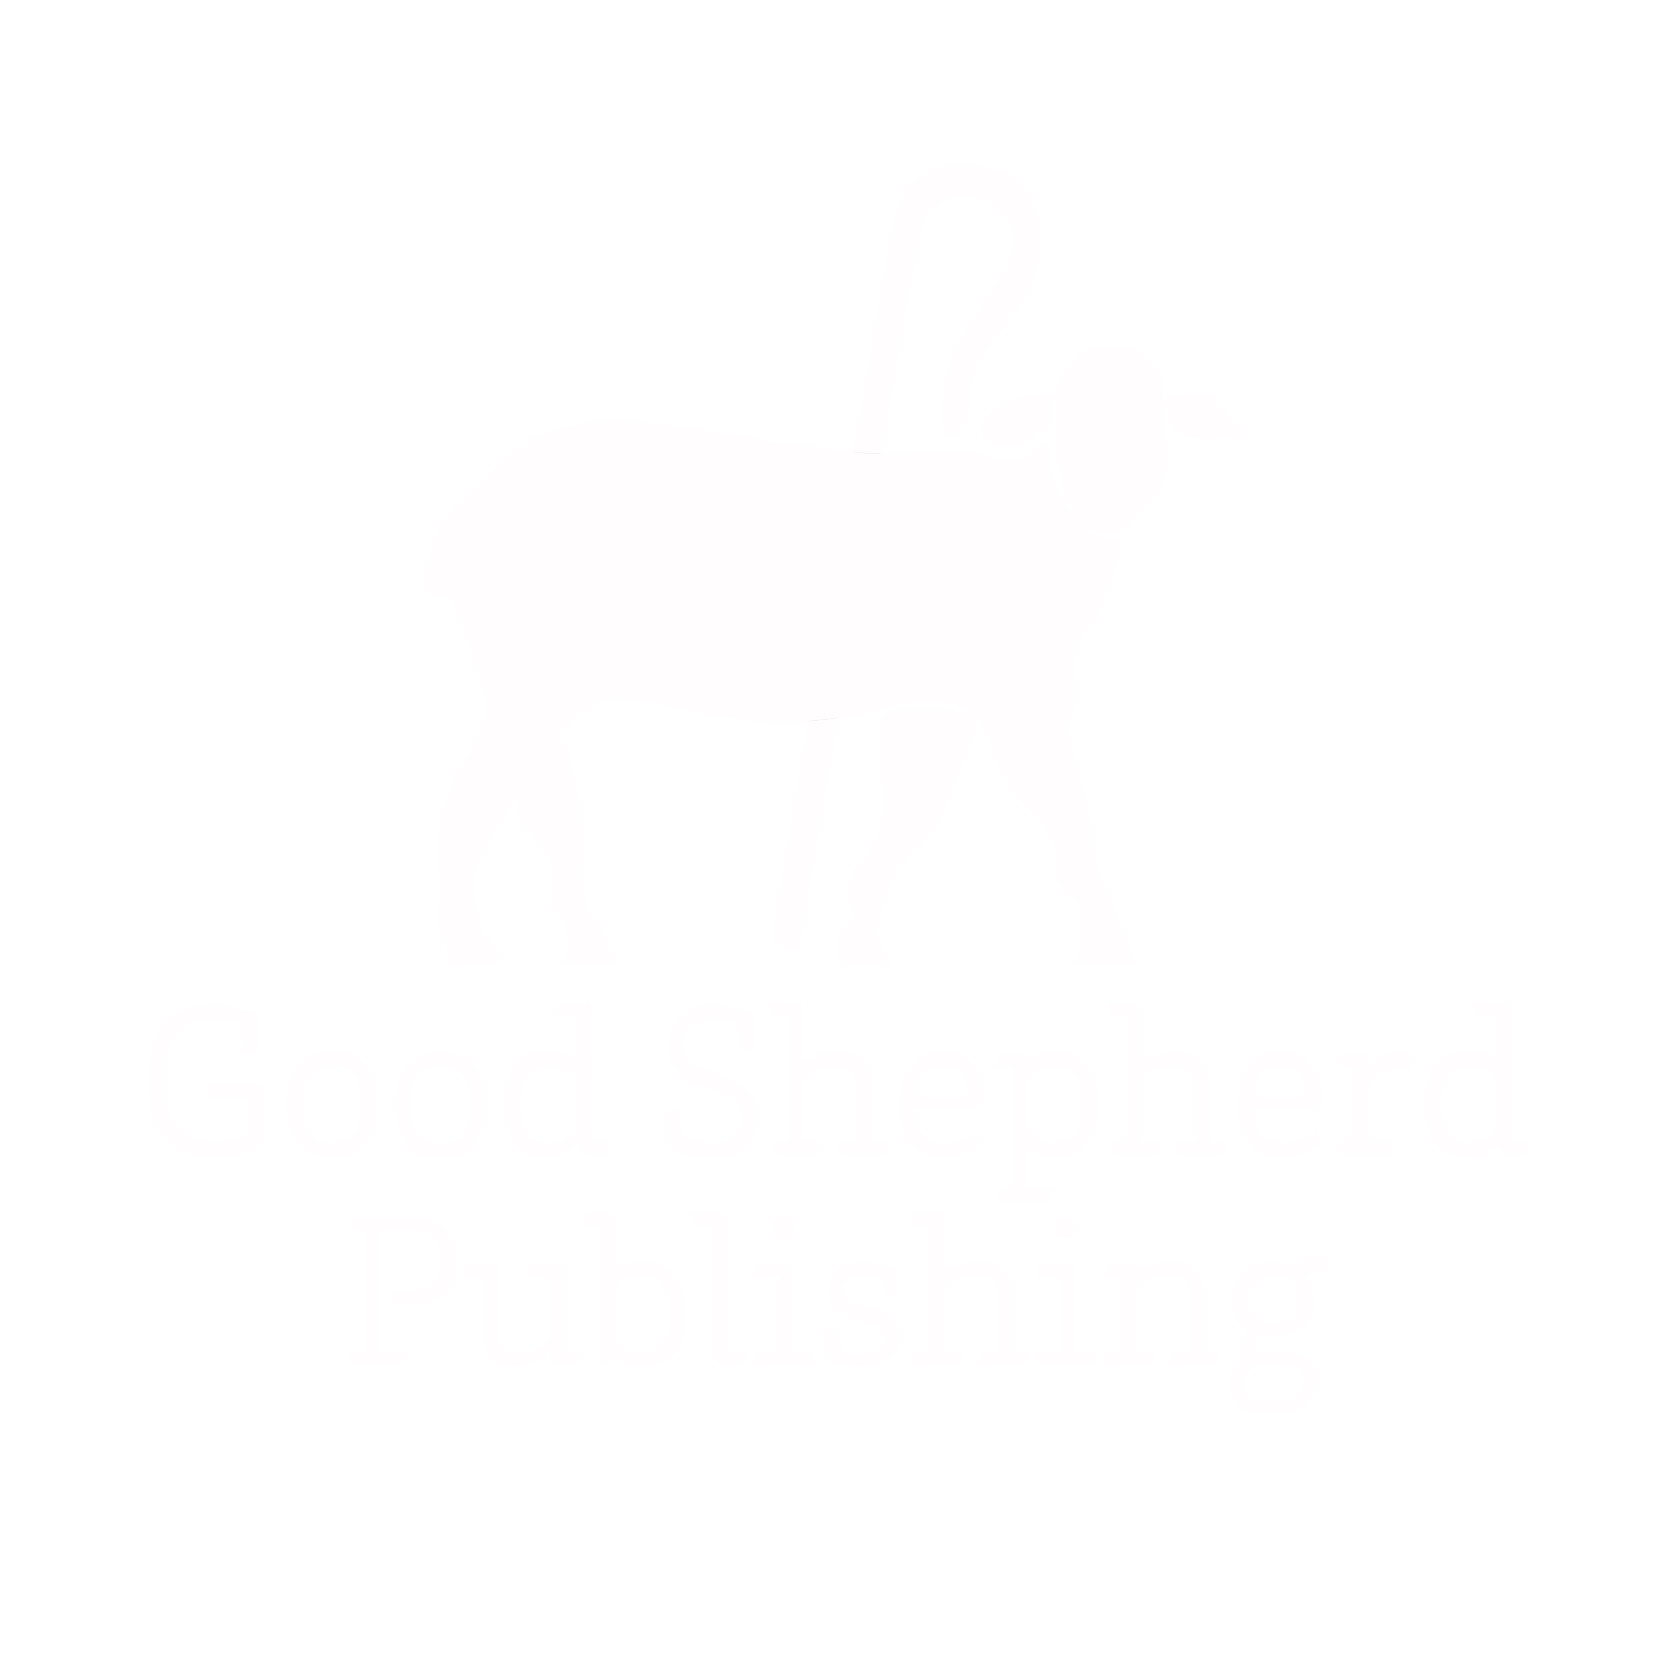 Good Shepherd Publishing